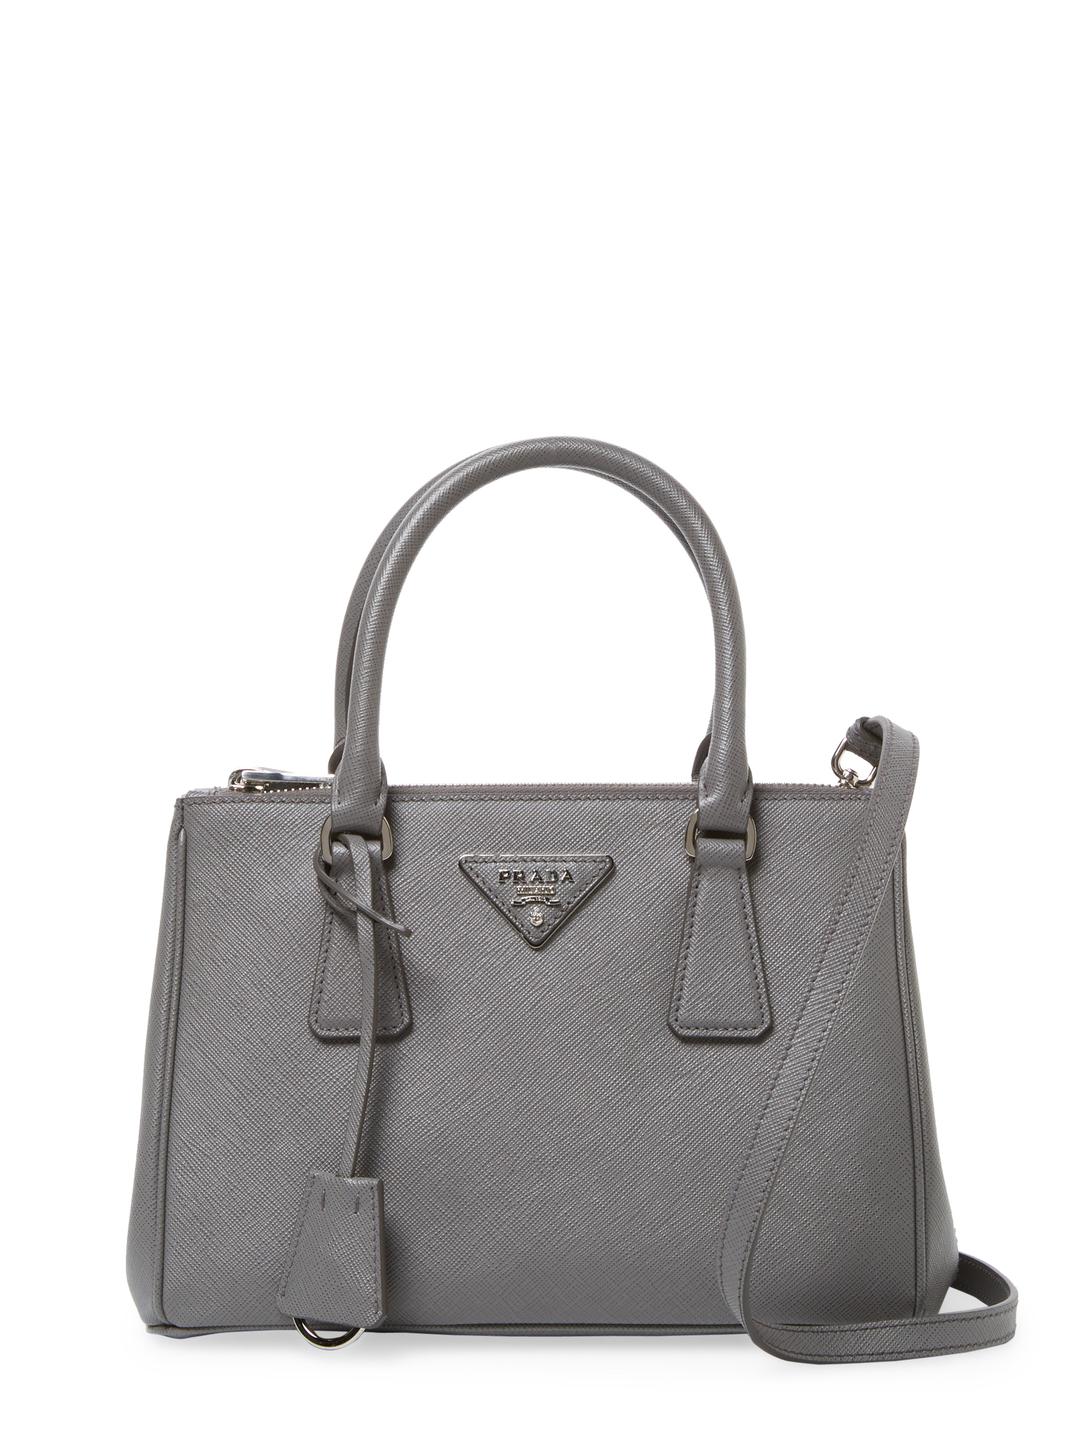 Prada Galleria Double Zip Mini Saffiano Leather Tote in Grey (Gray) | Lyst